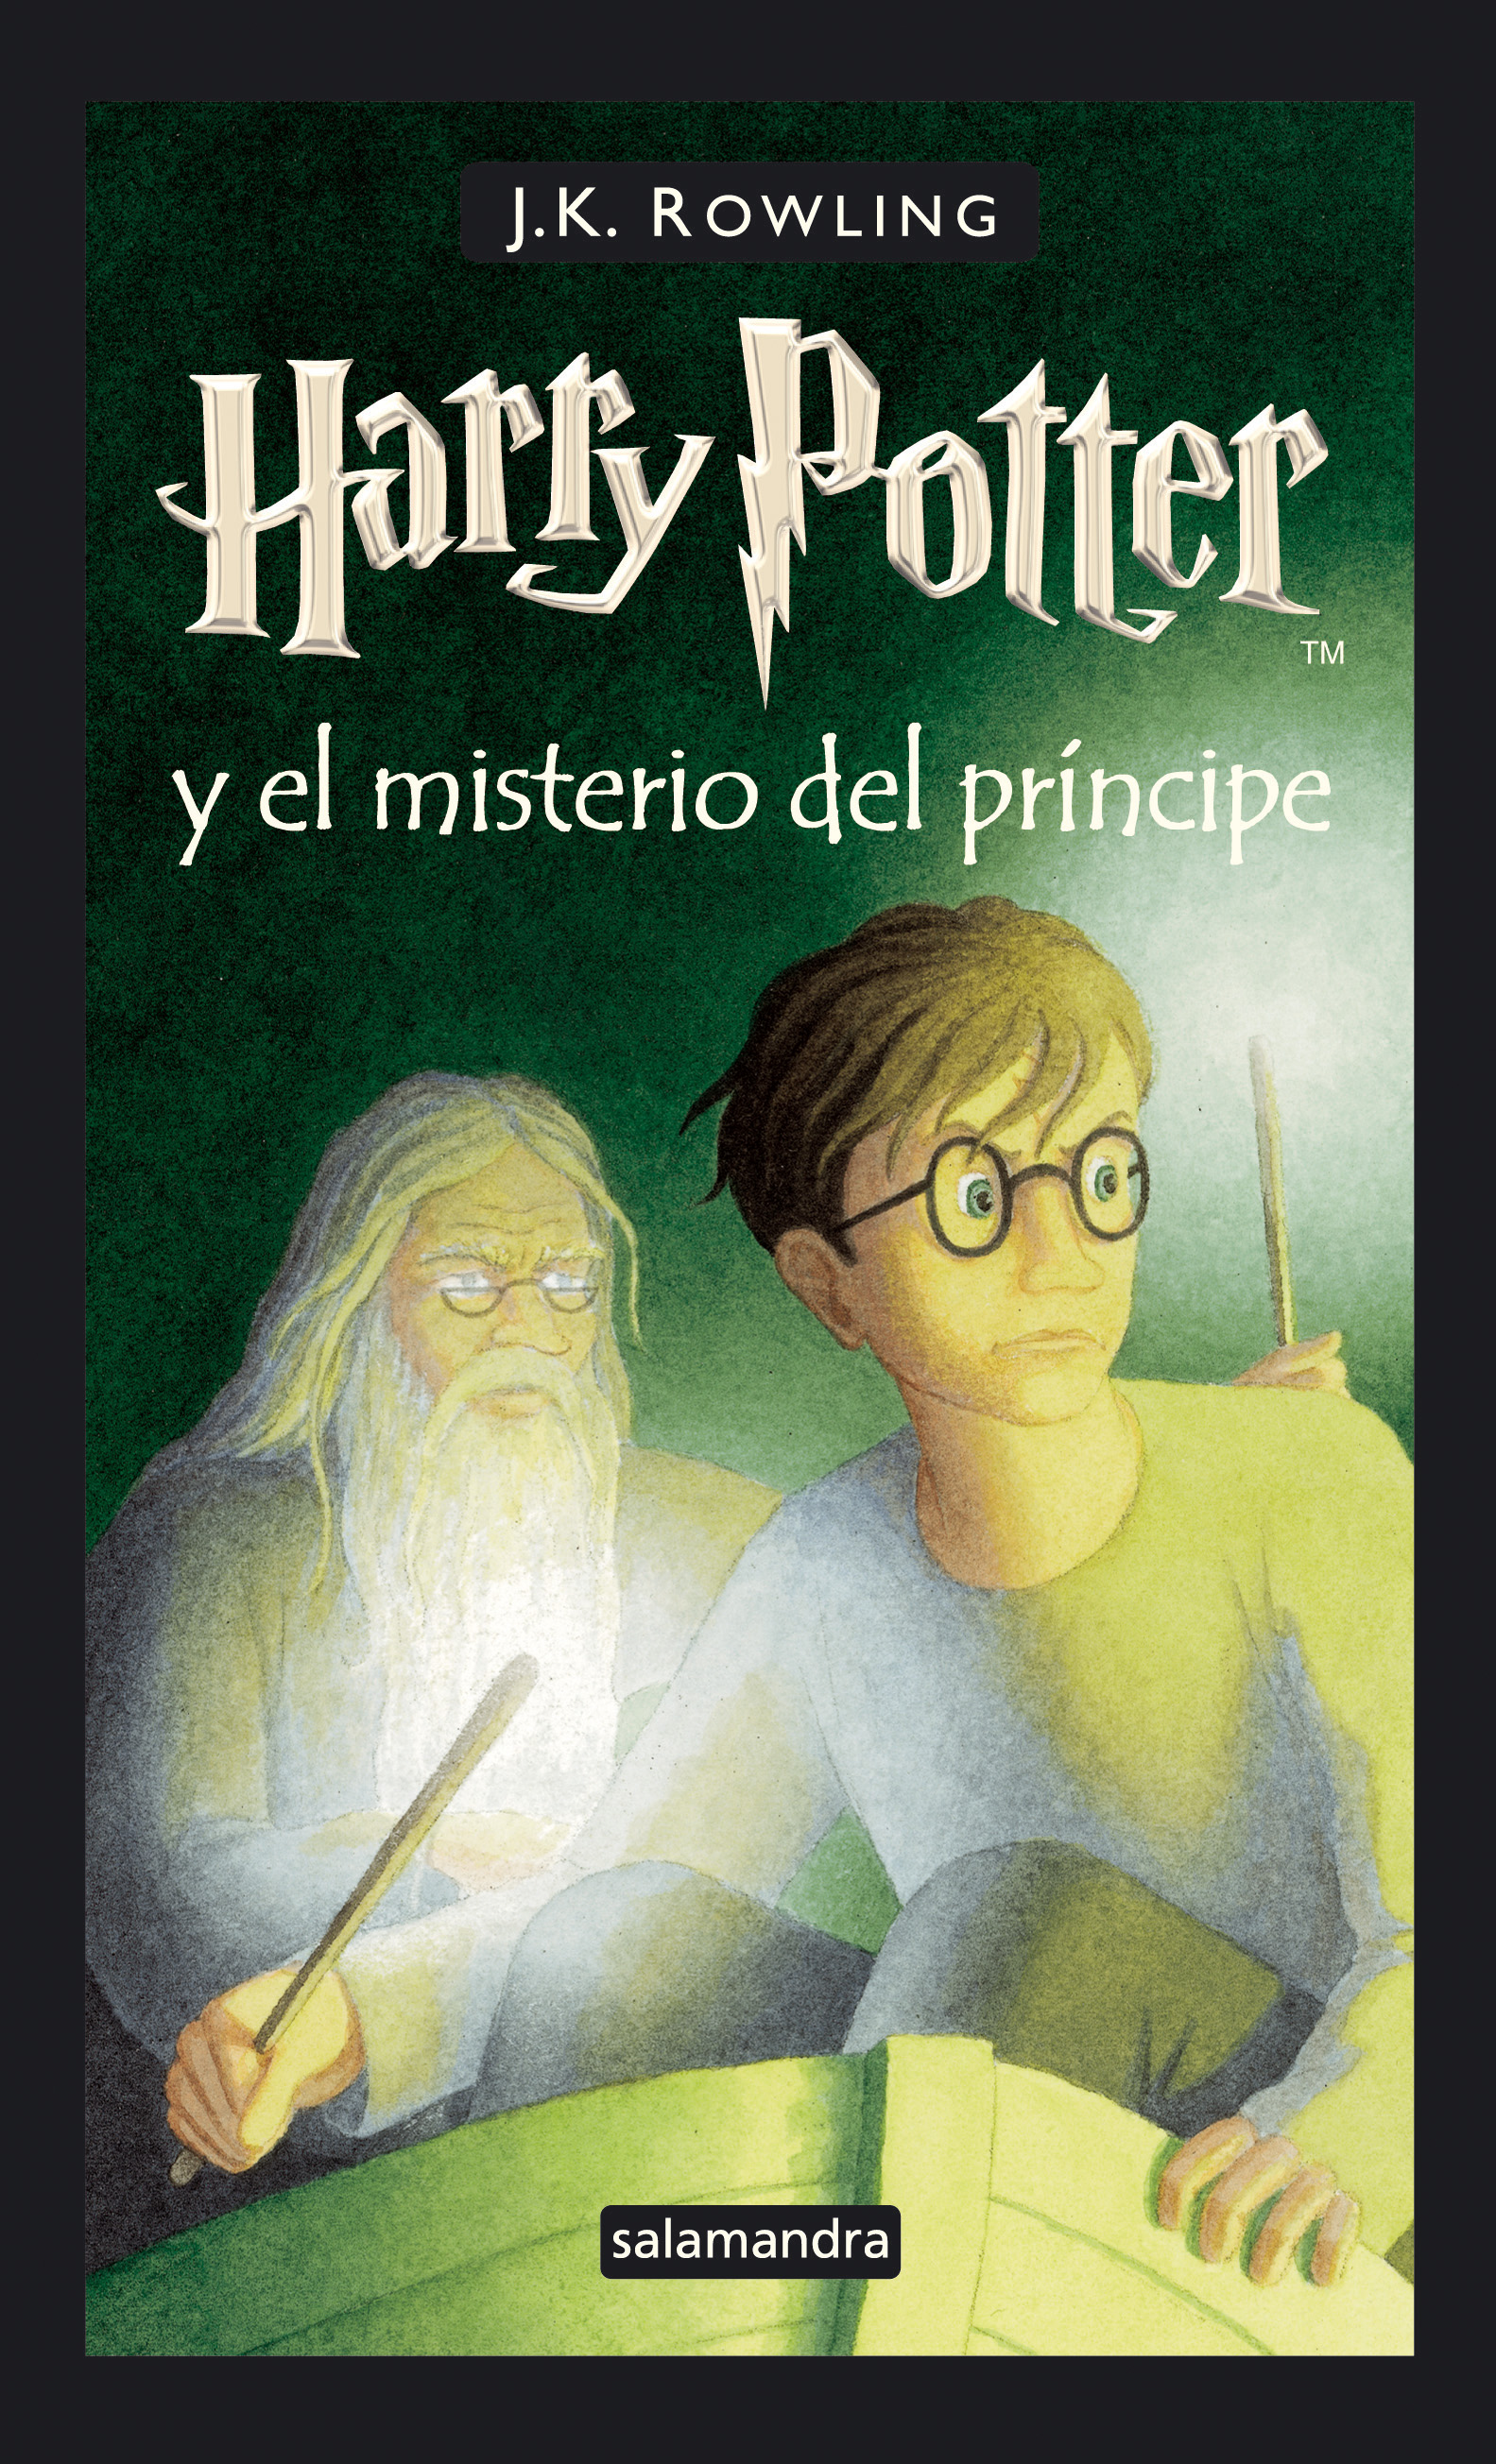 Harry Potter y el príncipe mestizo